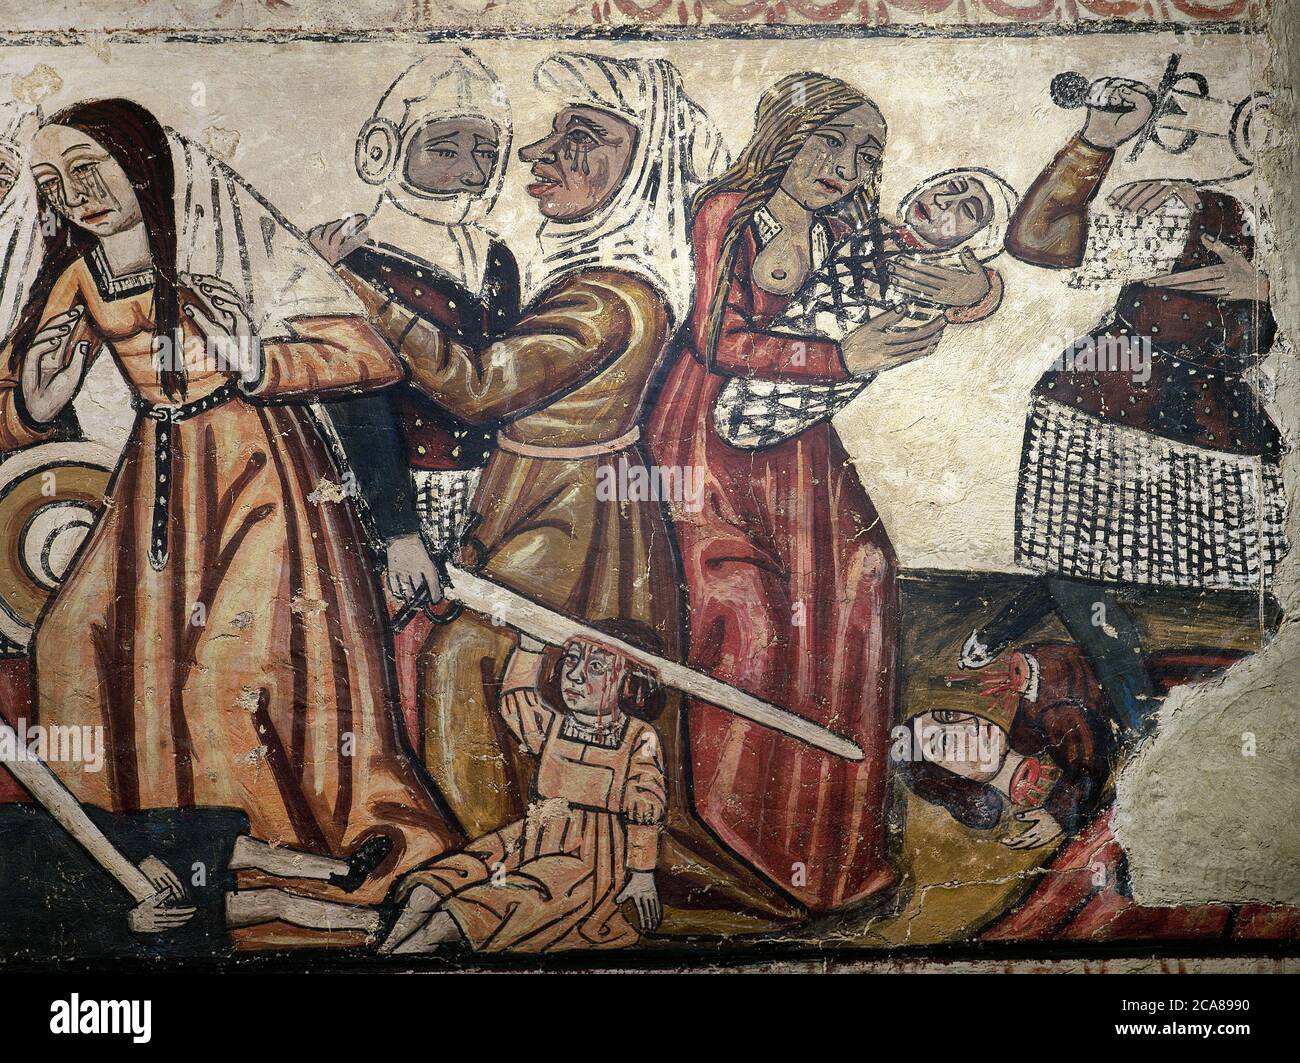 Massacre des innocents. Peintures murales de la nef centrale, XIVe siècle. Détails. Cathédrale de Mondoñedo. Province de Lugo, Galice, Espagne. Banque D'Images